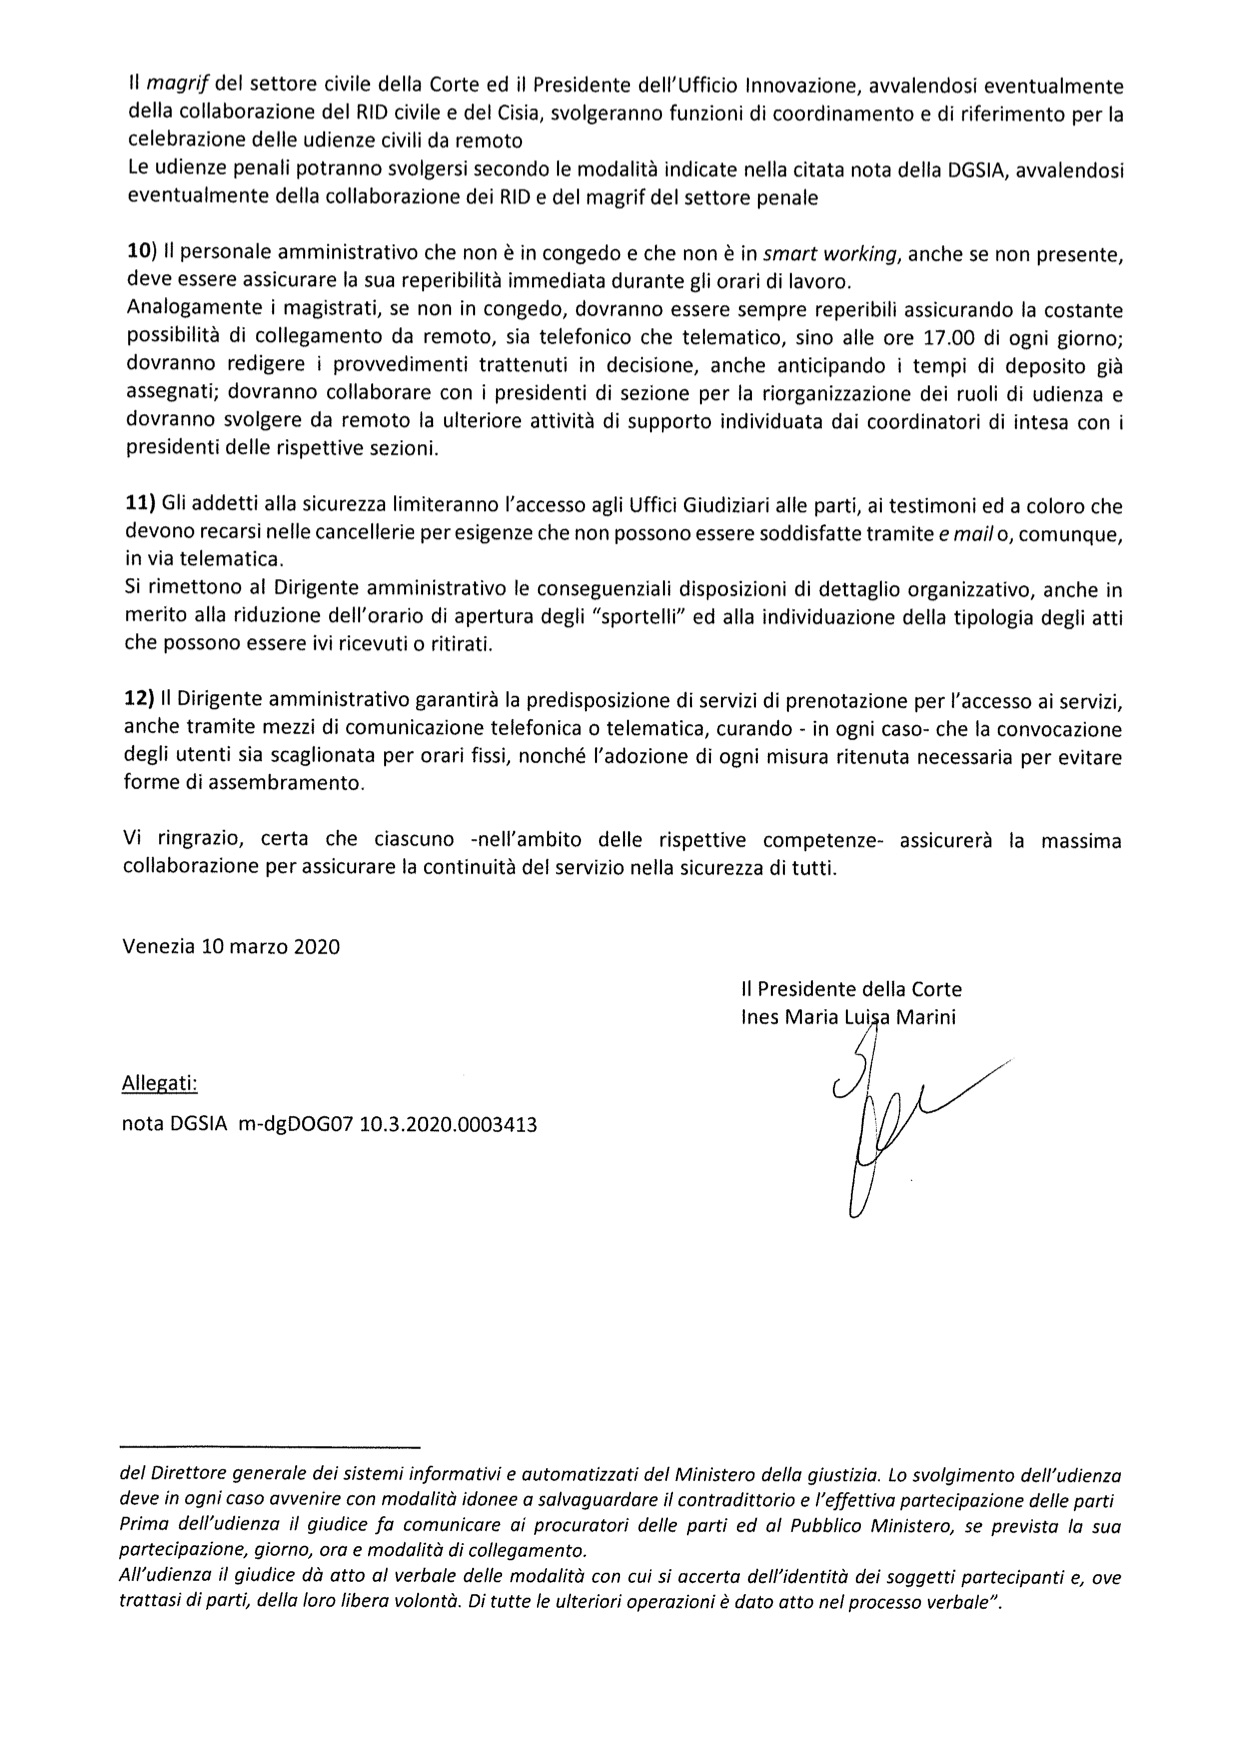 Provvedimento Presidente Corte d'Appello di venezia dott.ssa Marini del 10.03.2020 - Provvedimenti organizzativi conseguenti all'entrata in vigore del decreto legge n. 11 dell'8.03.2020